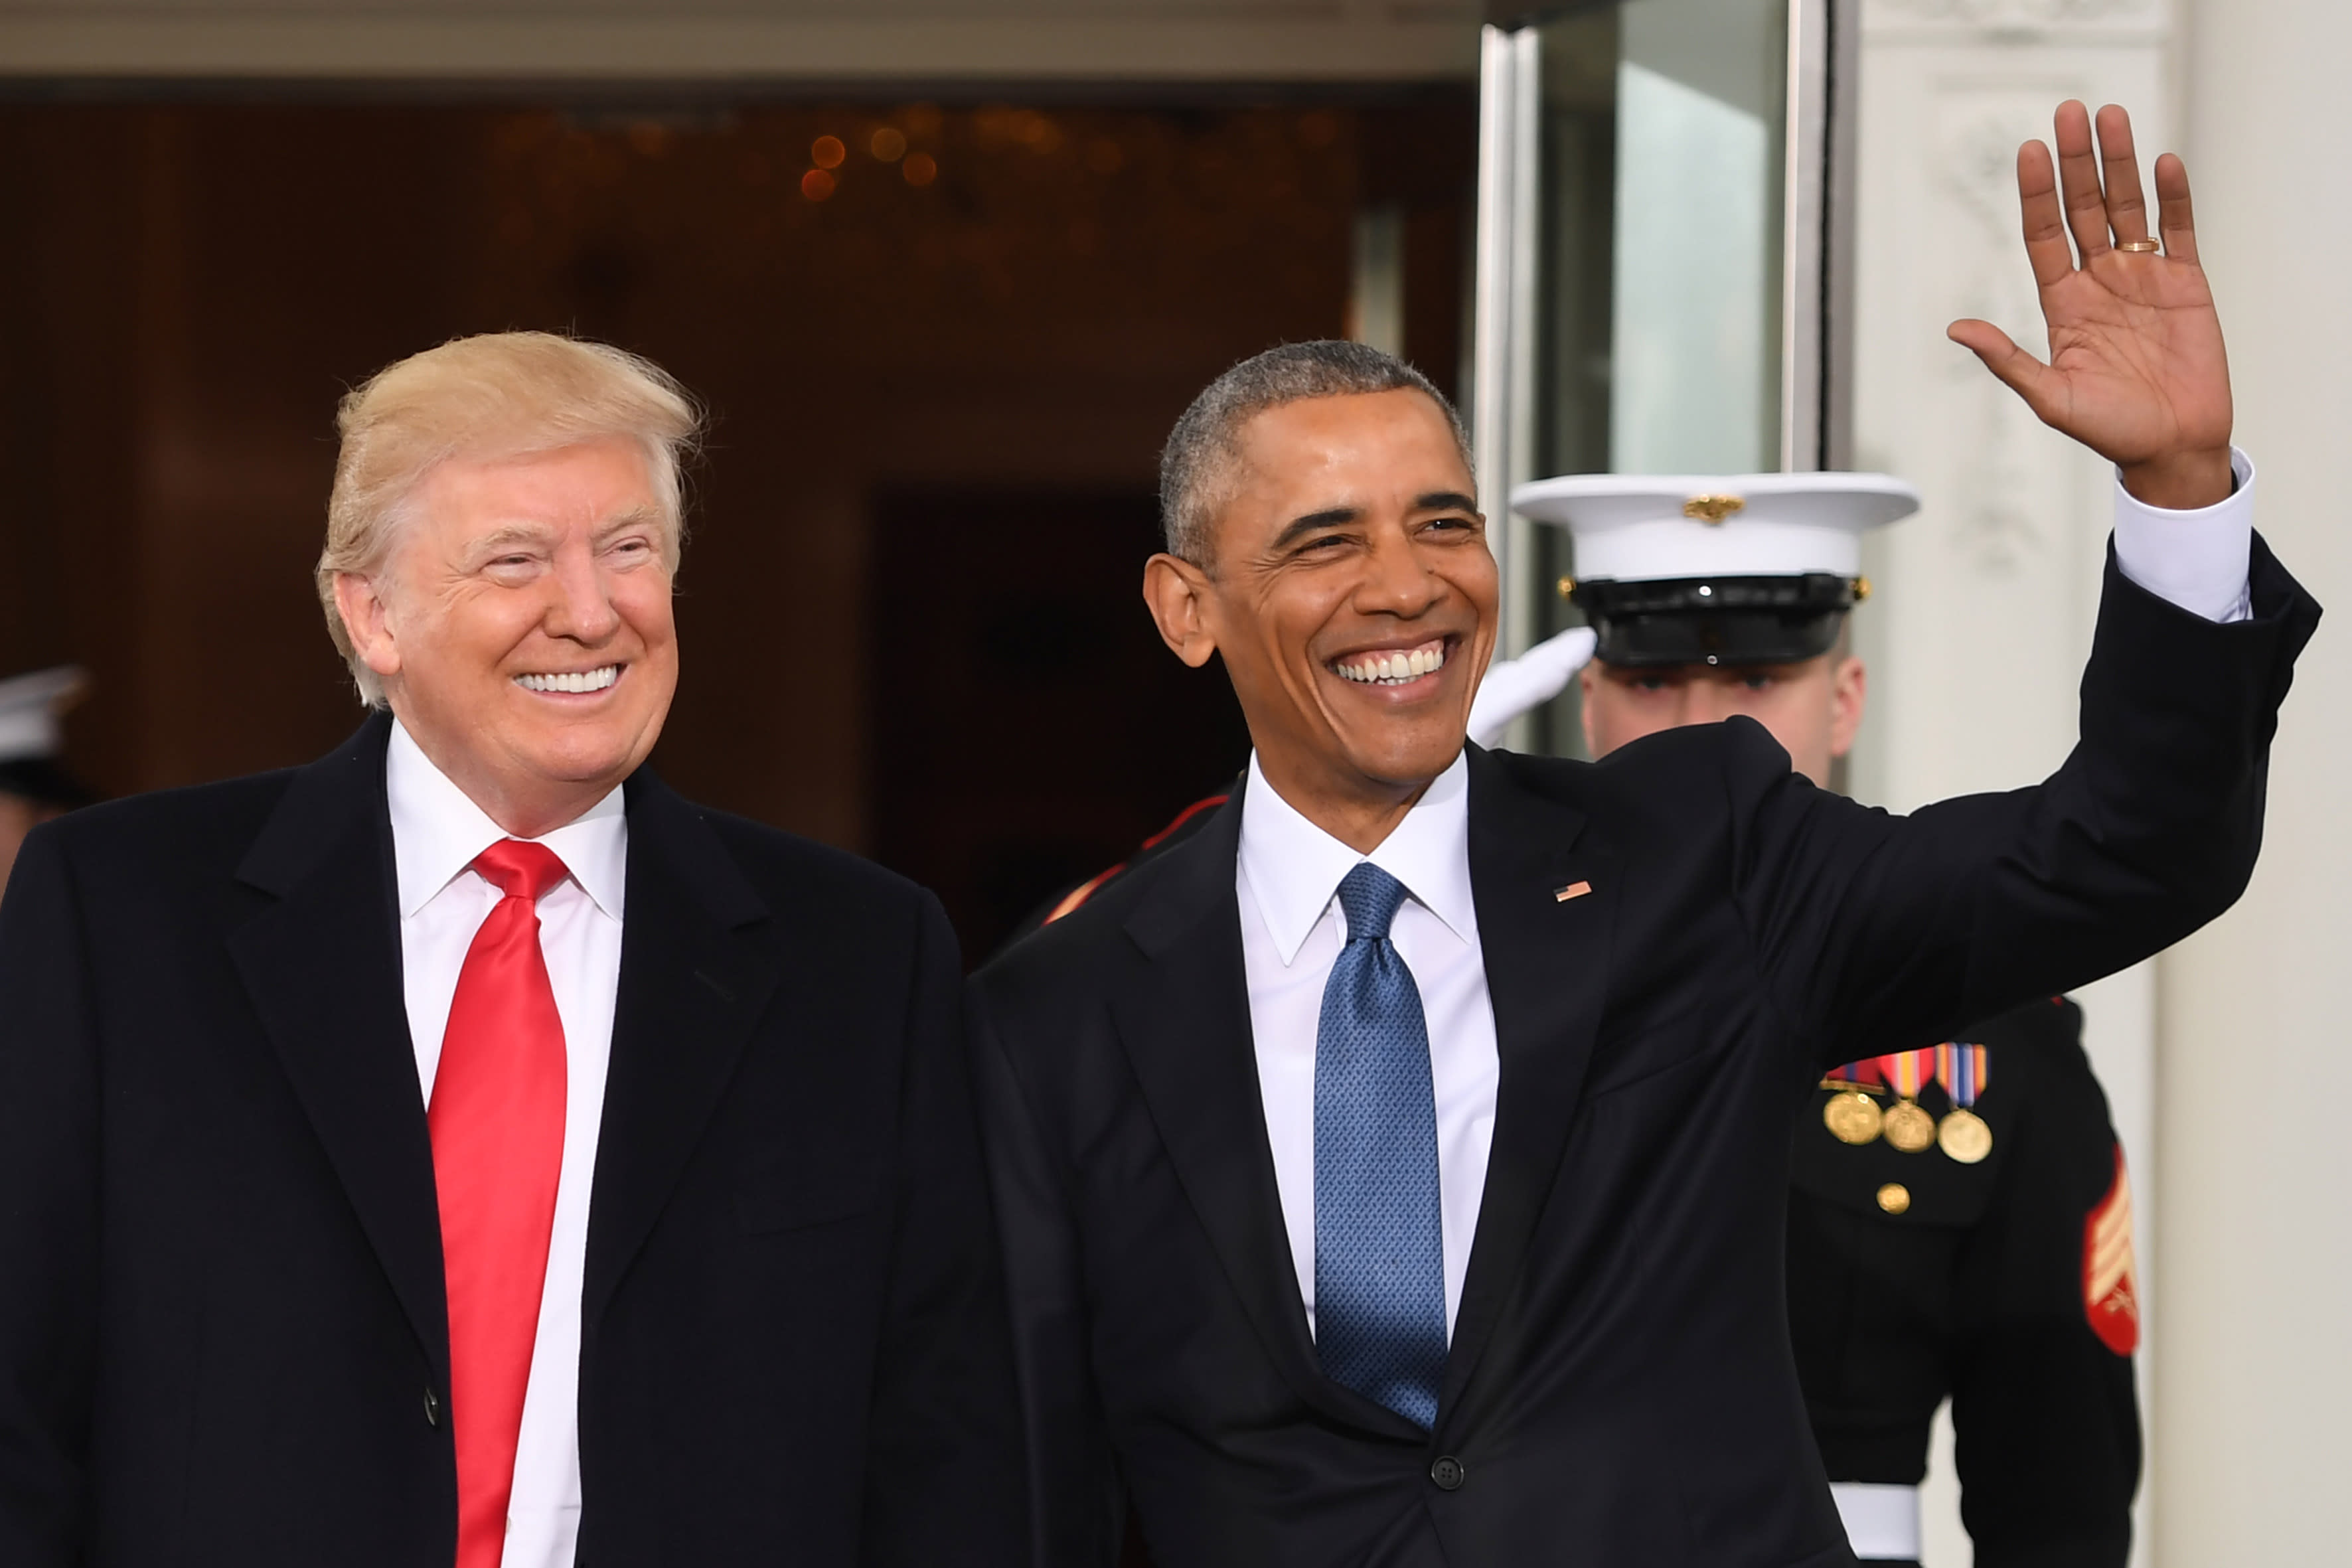 Barack Obama and Donald Trump 